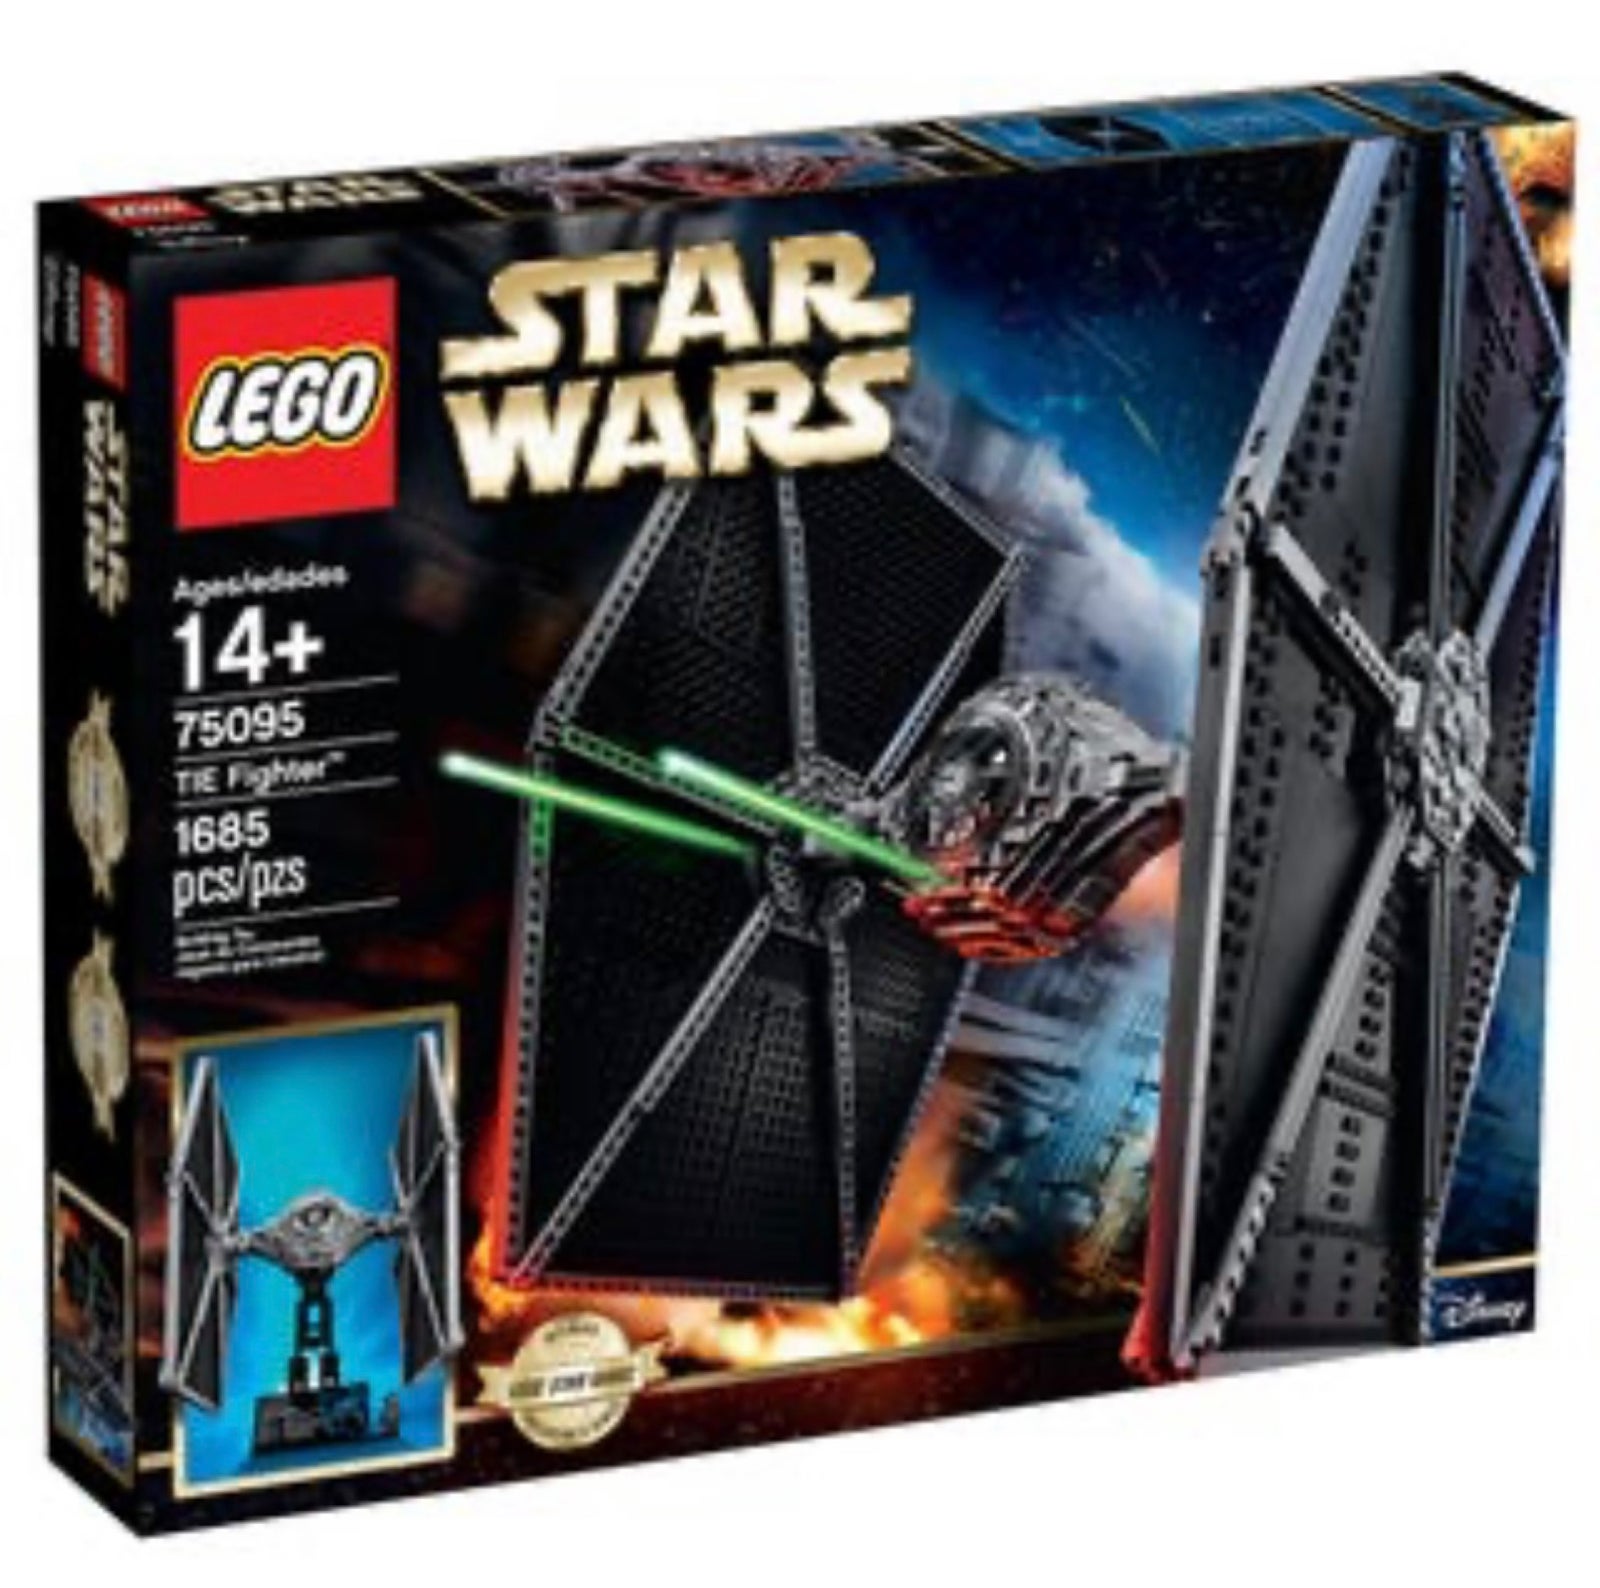 Lego Star Wars, 75095